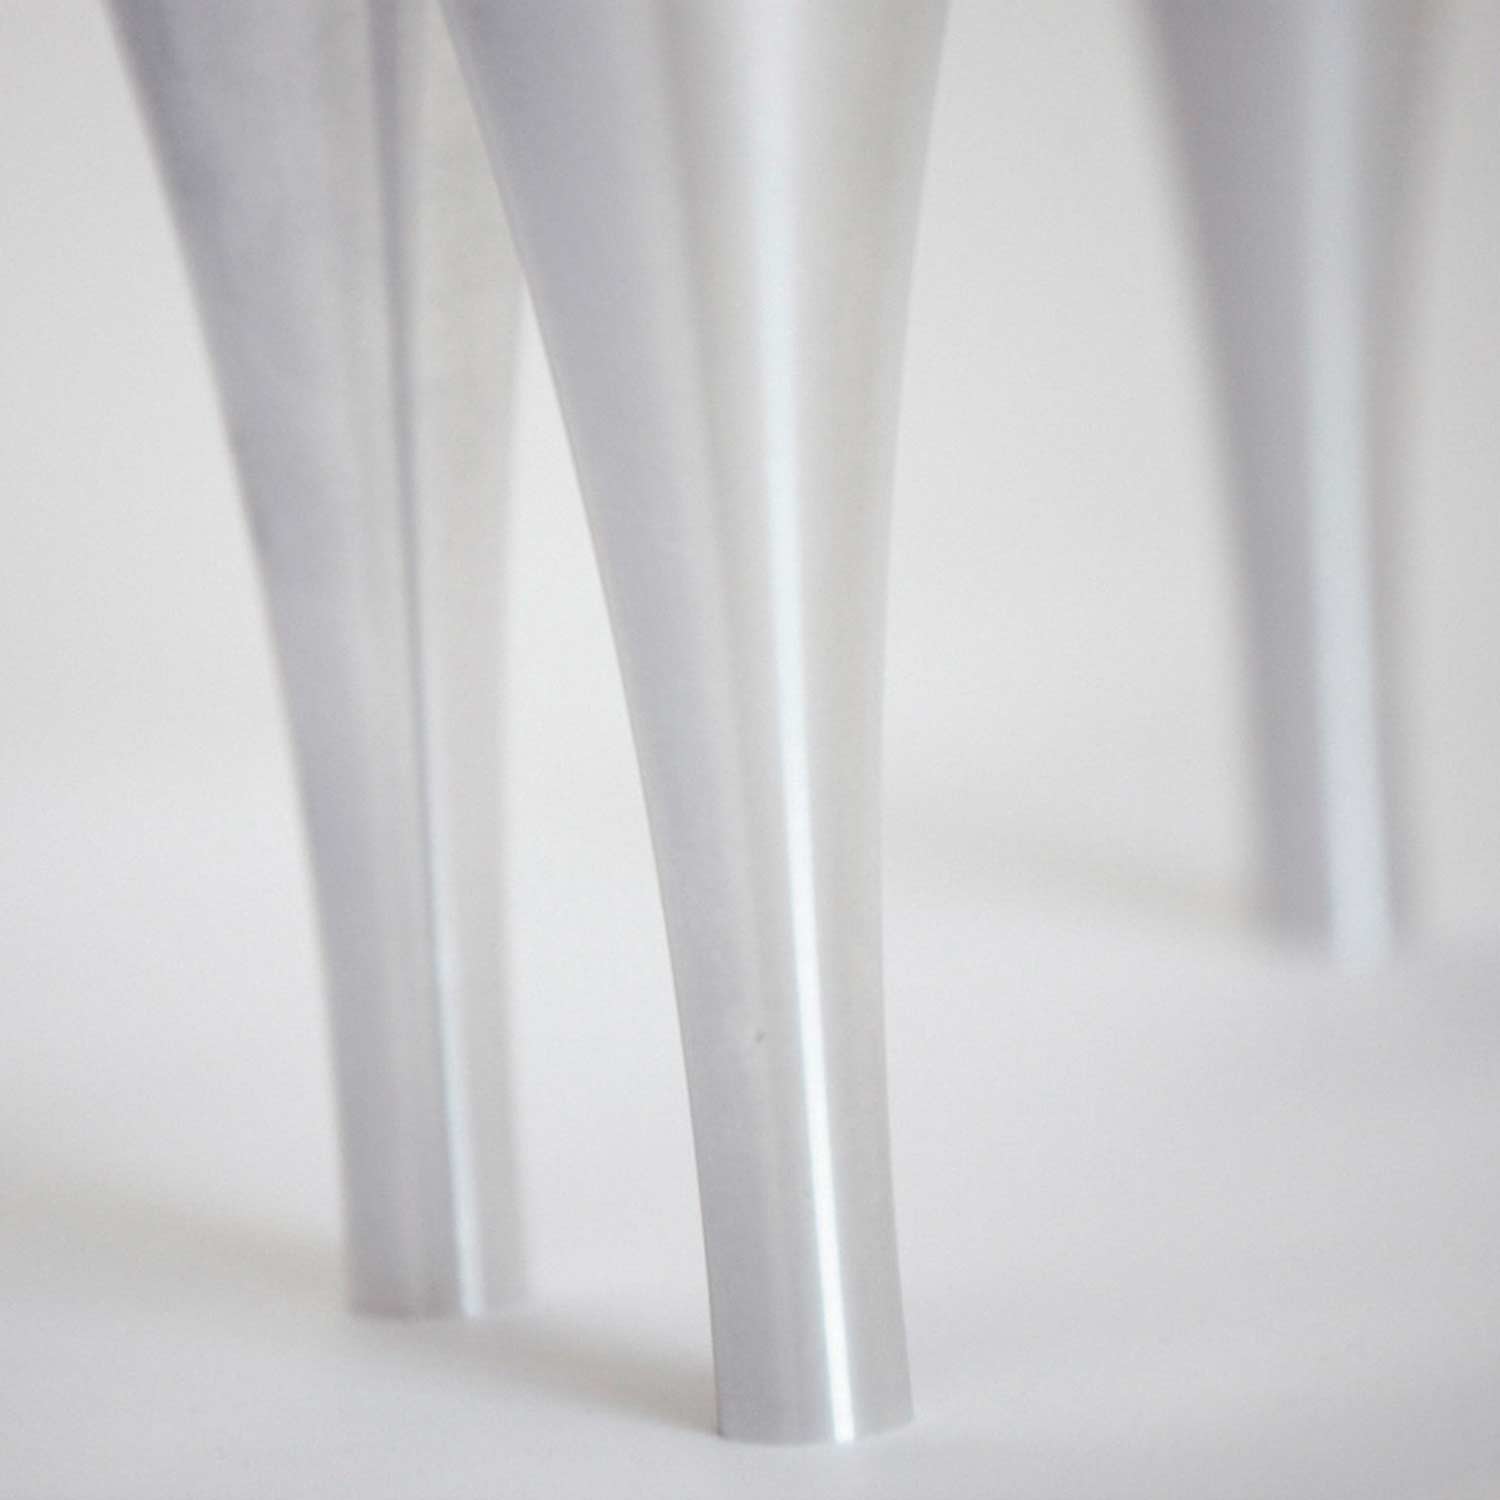 aluminium feet detail